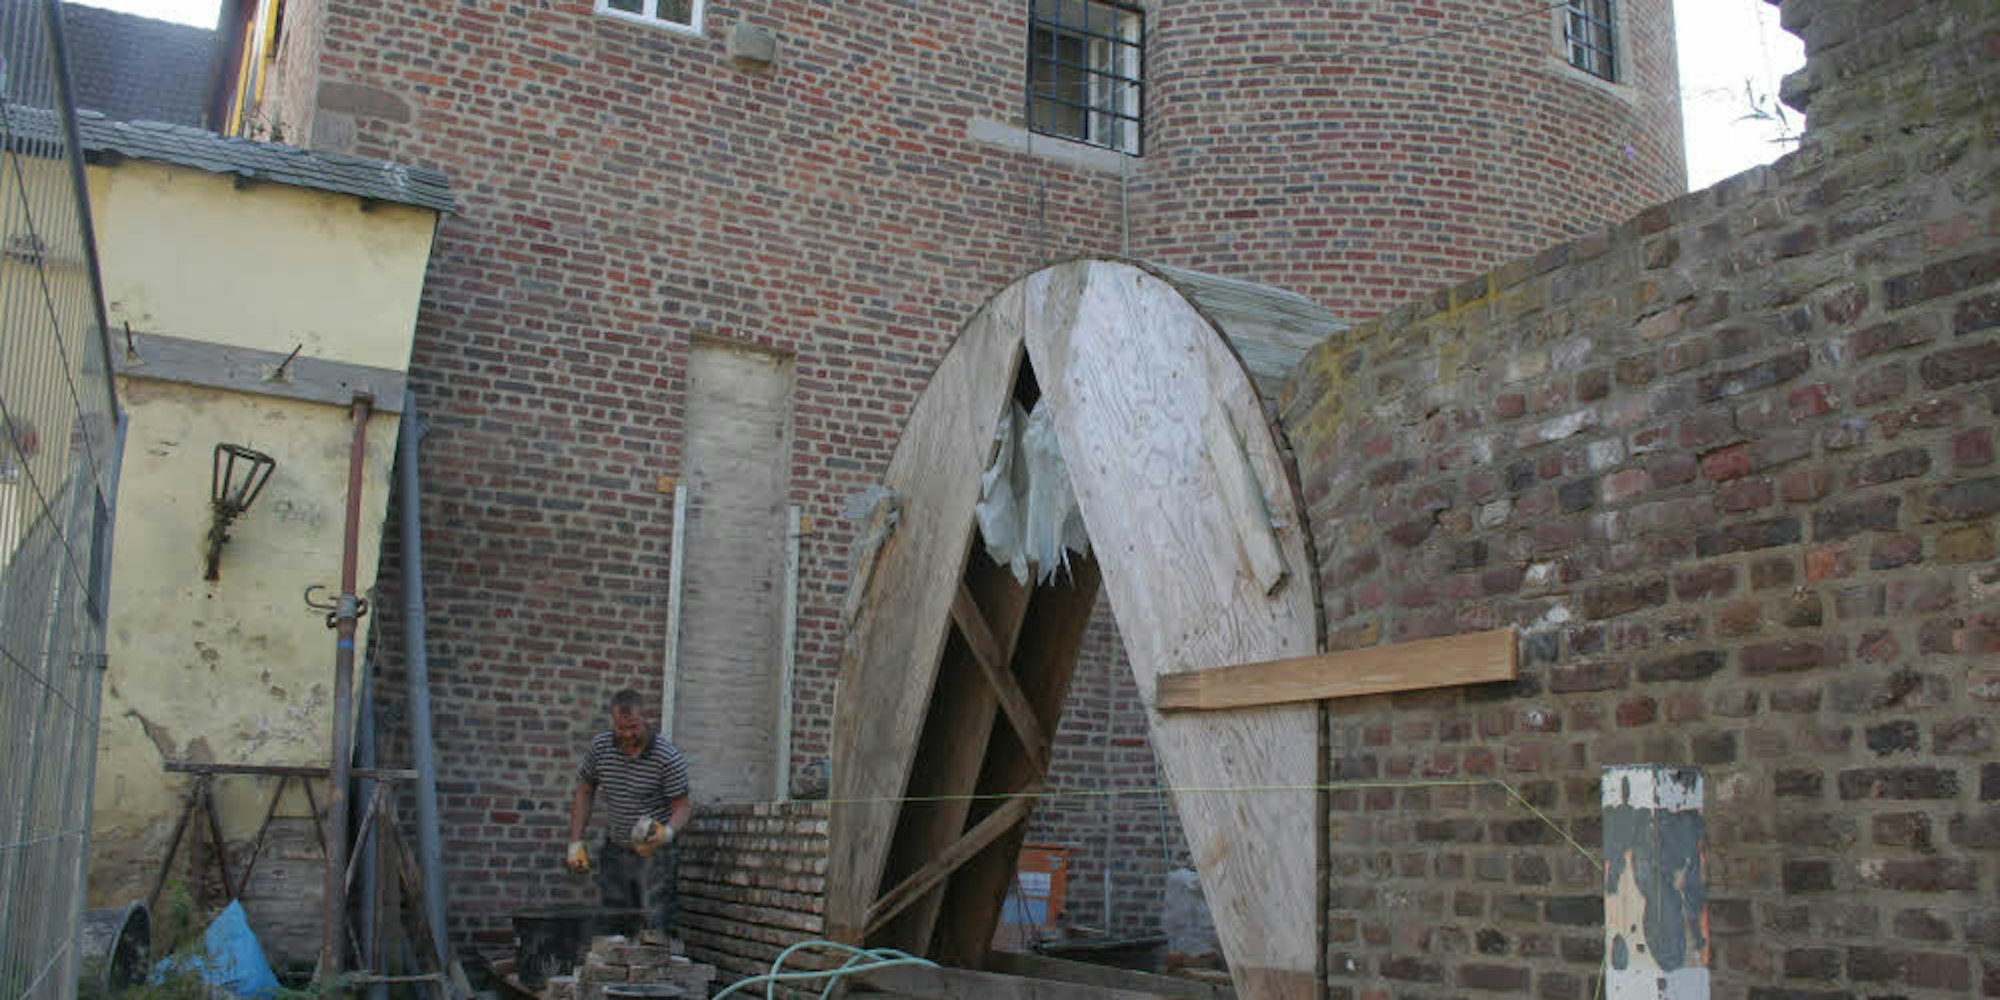 Eine Schablone aus Holz hilft dabei, den Torbogen neben dem Aachener Tor in der gleichen Größe wieder aufzubauen wie seinen Vorgänger.